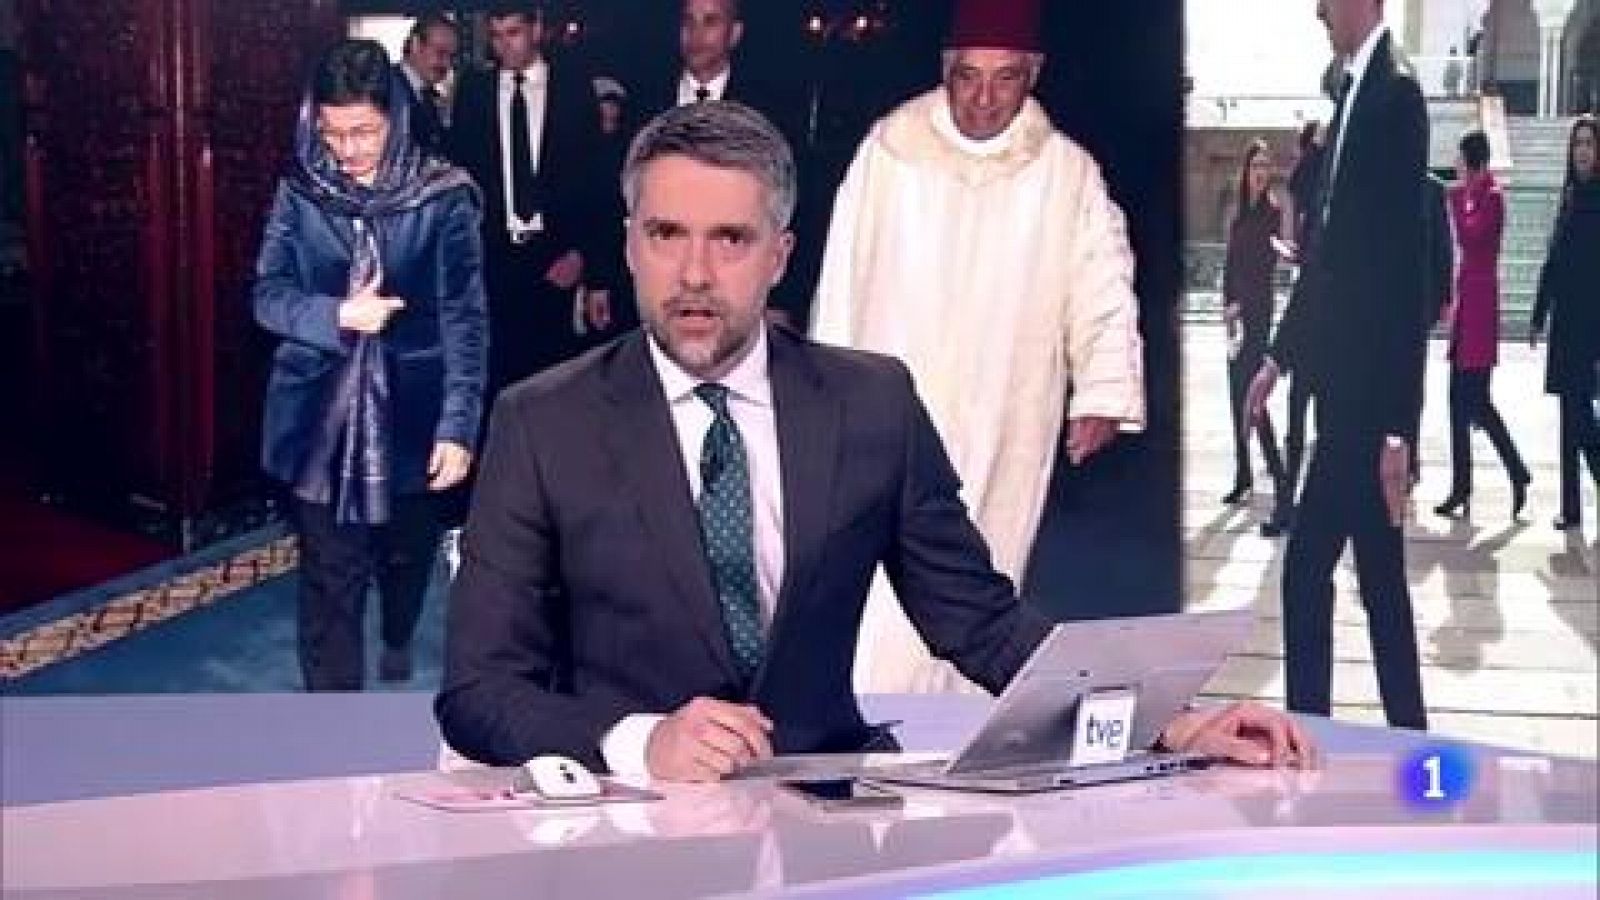 Marruecos y España apuestan por el "diálogo" sin "decisiones unilaterales" para definir su espacio marítimo común